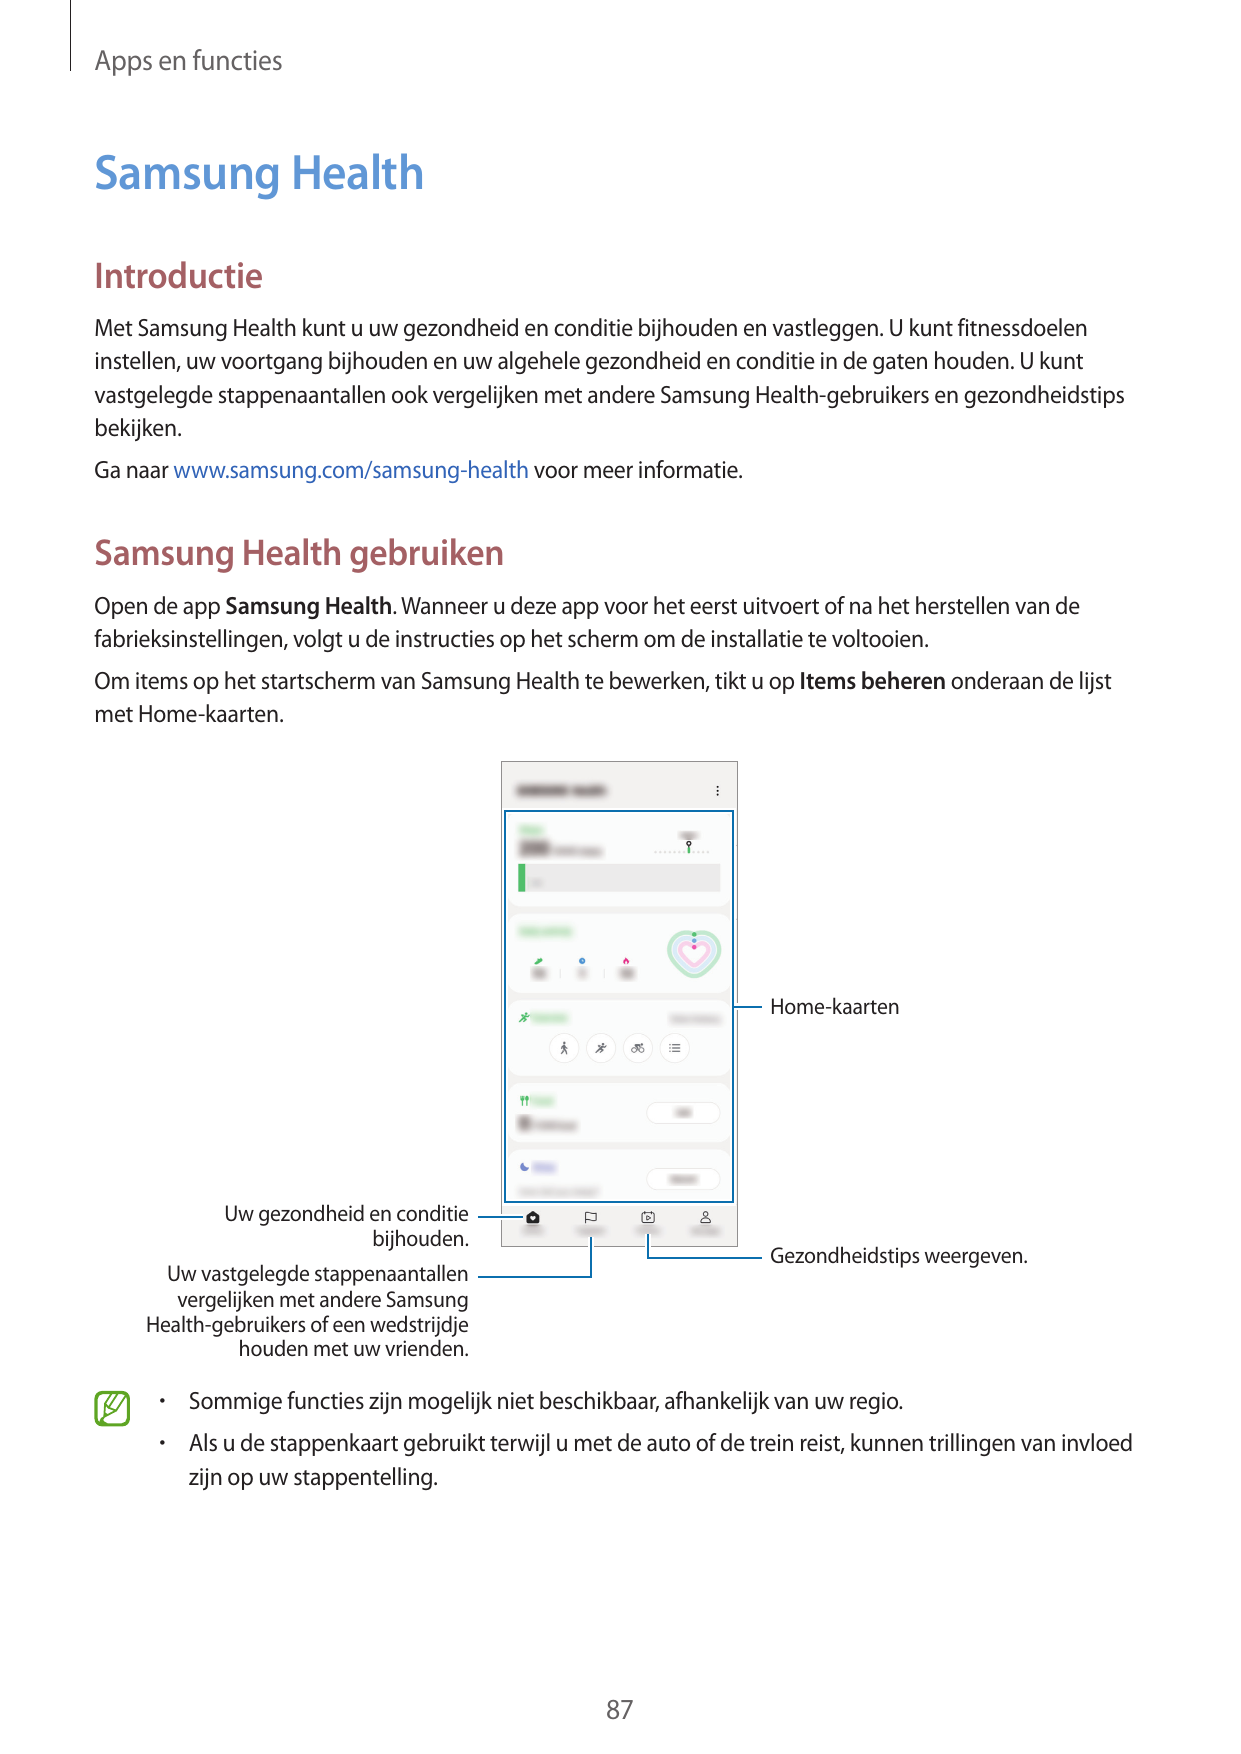 Apps en functiesSamsung HealthIntroductieMet Samsung Health kunt u uw gezondheid en conditie bijhouden en vastleggen. U kunt fit